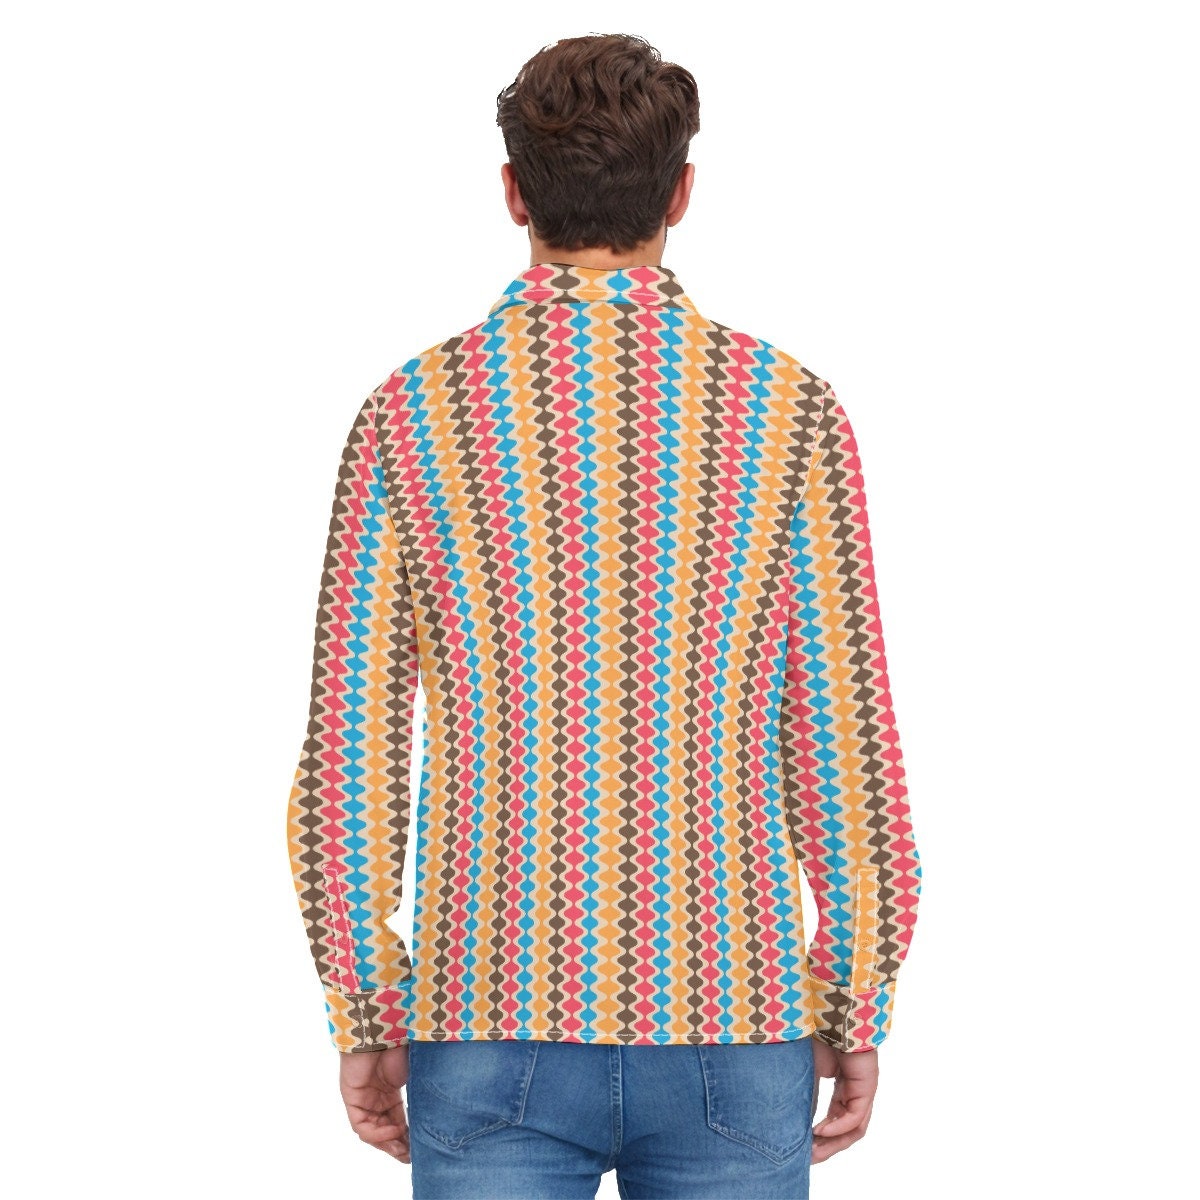 chemise de style vintage des années 70, Groovy Stripe Shirt Men, vêtements des années 70 Hommes, Retro Shirt Men, Hippie Shirt Men, 70s Shirt Men, chemise inspirée des années 70